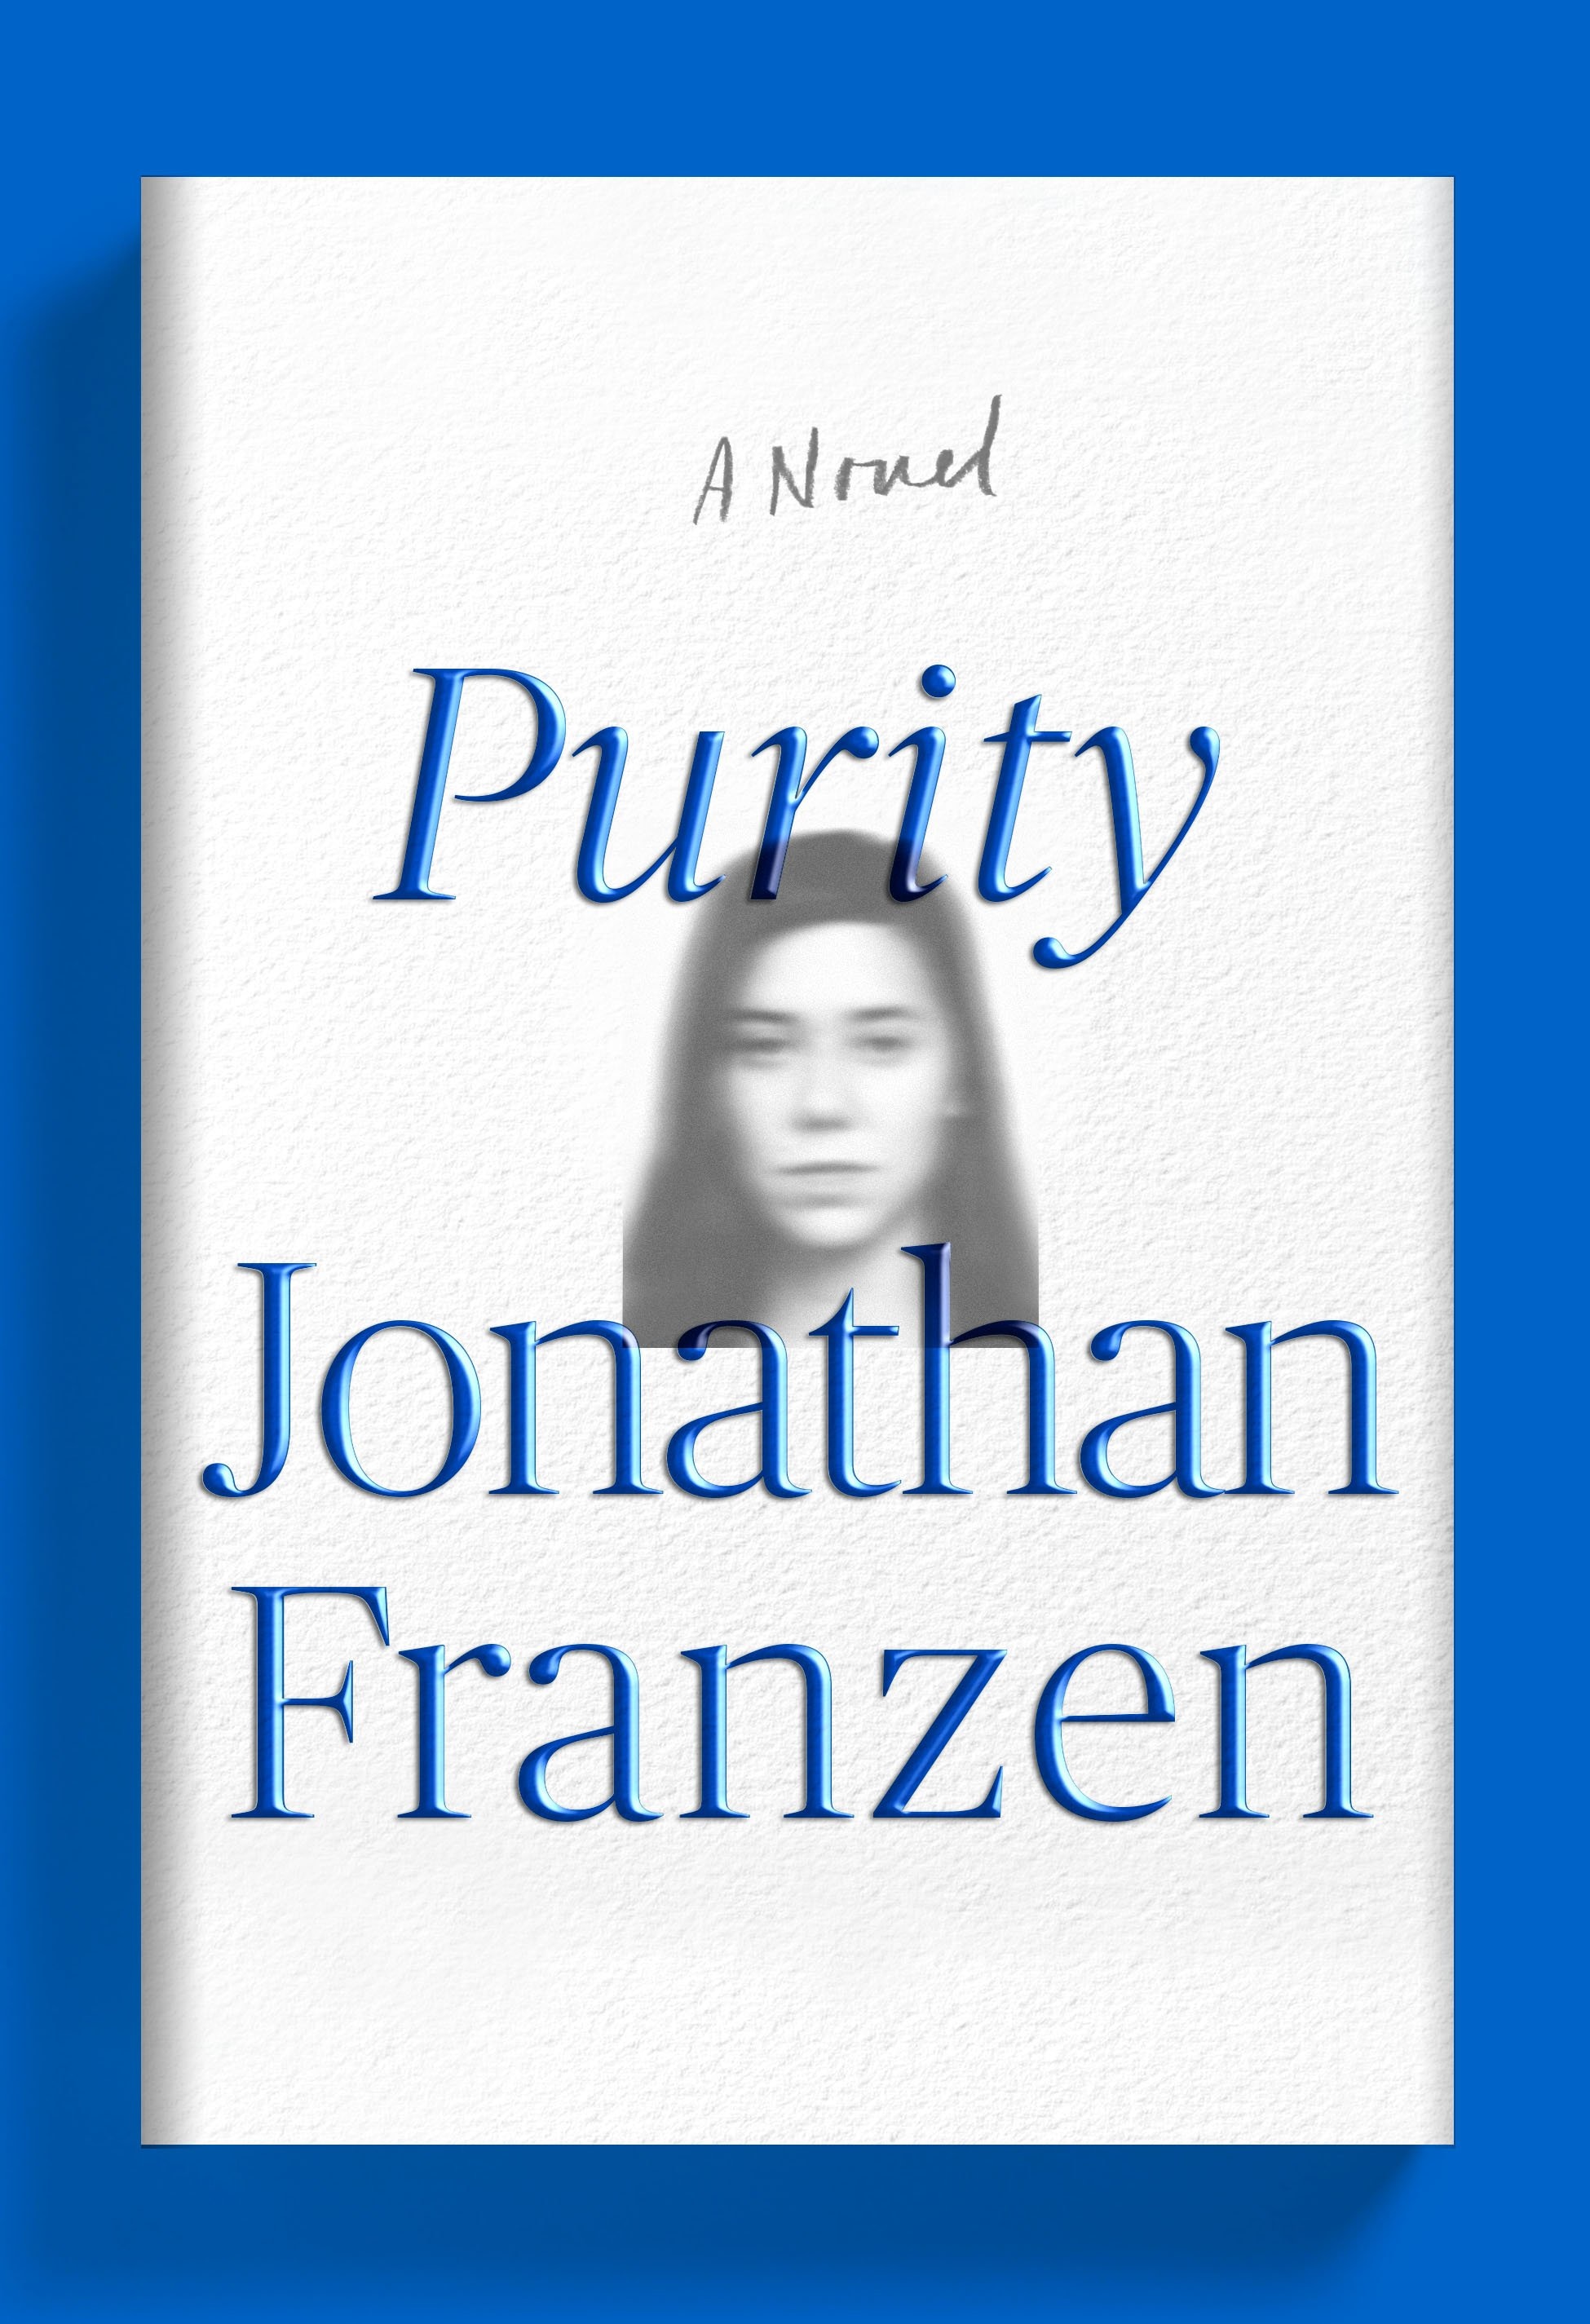 Book “Purity” by Jonathan Franzen — September 1, 2015